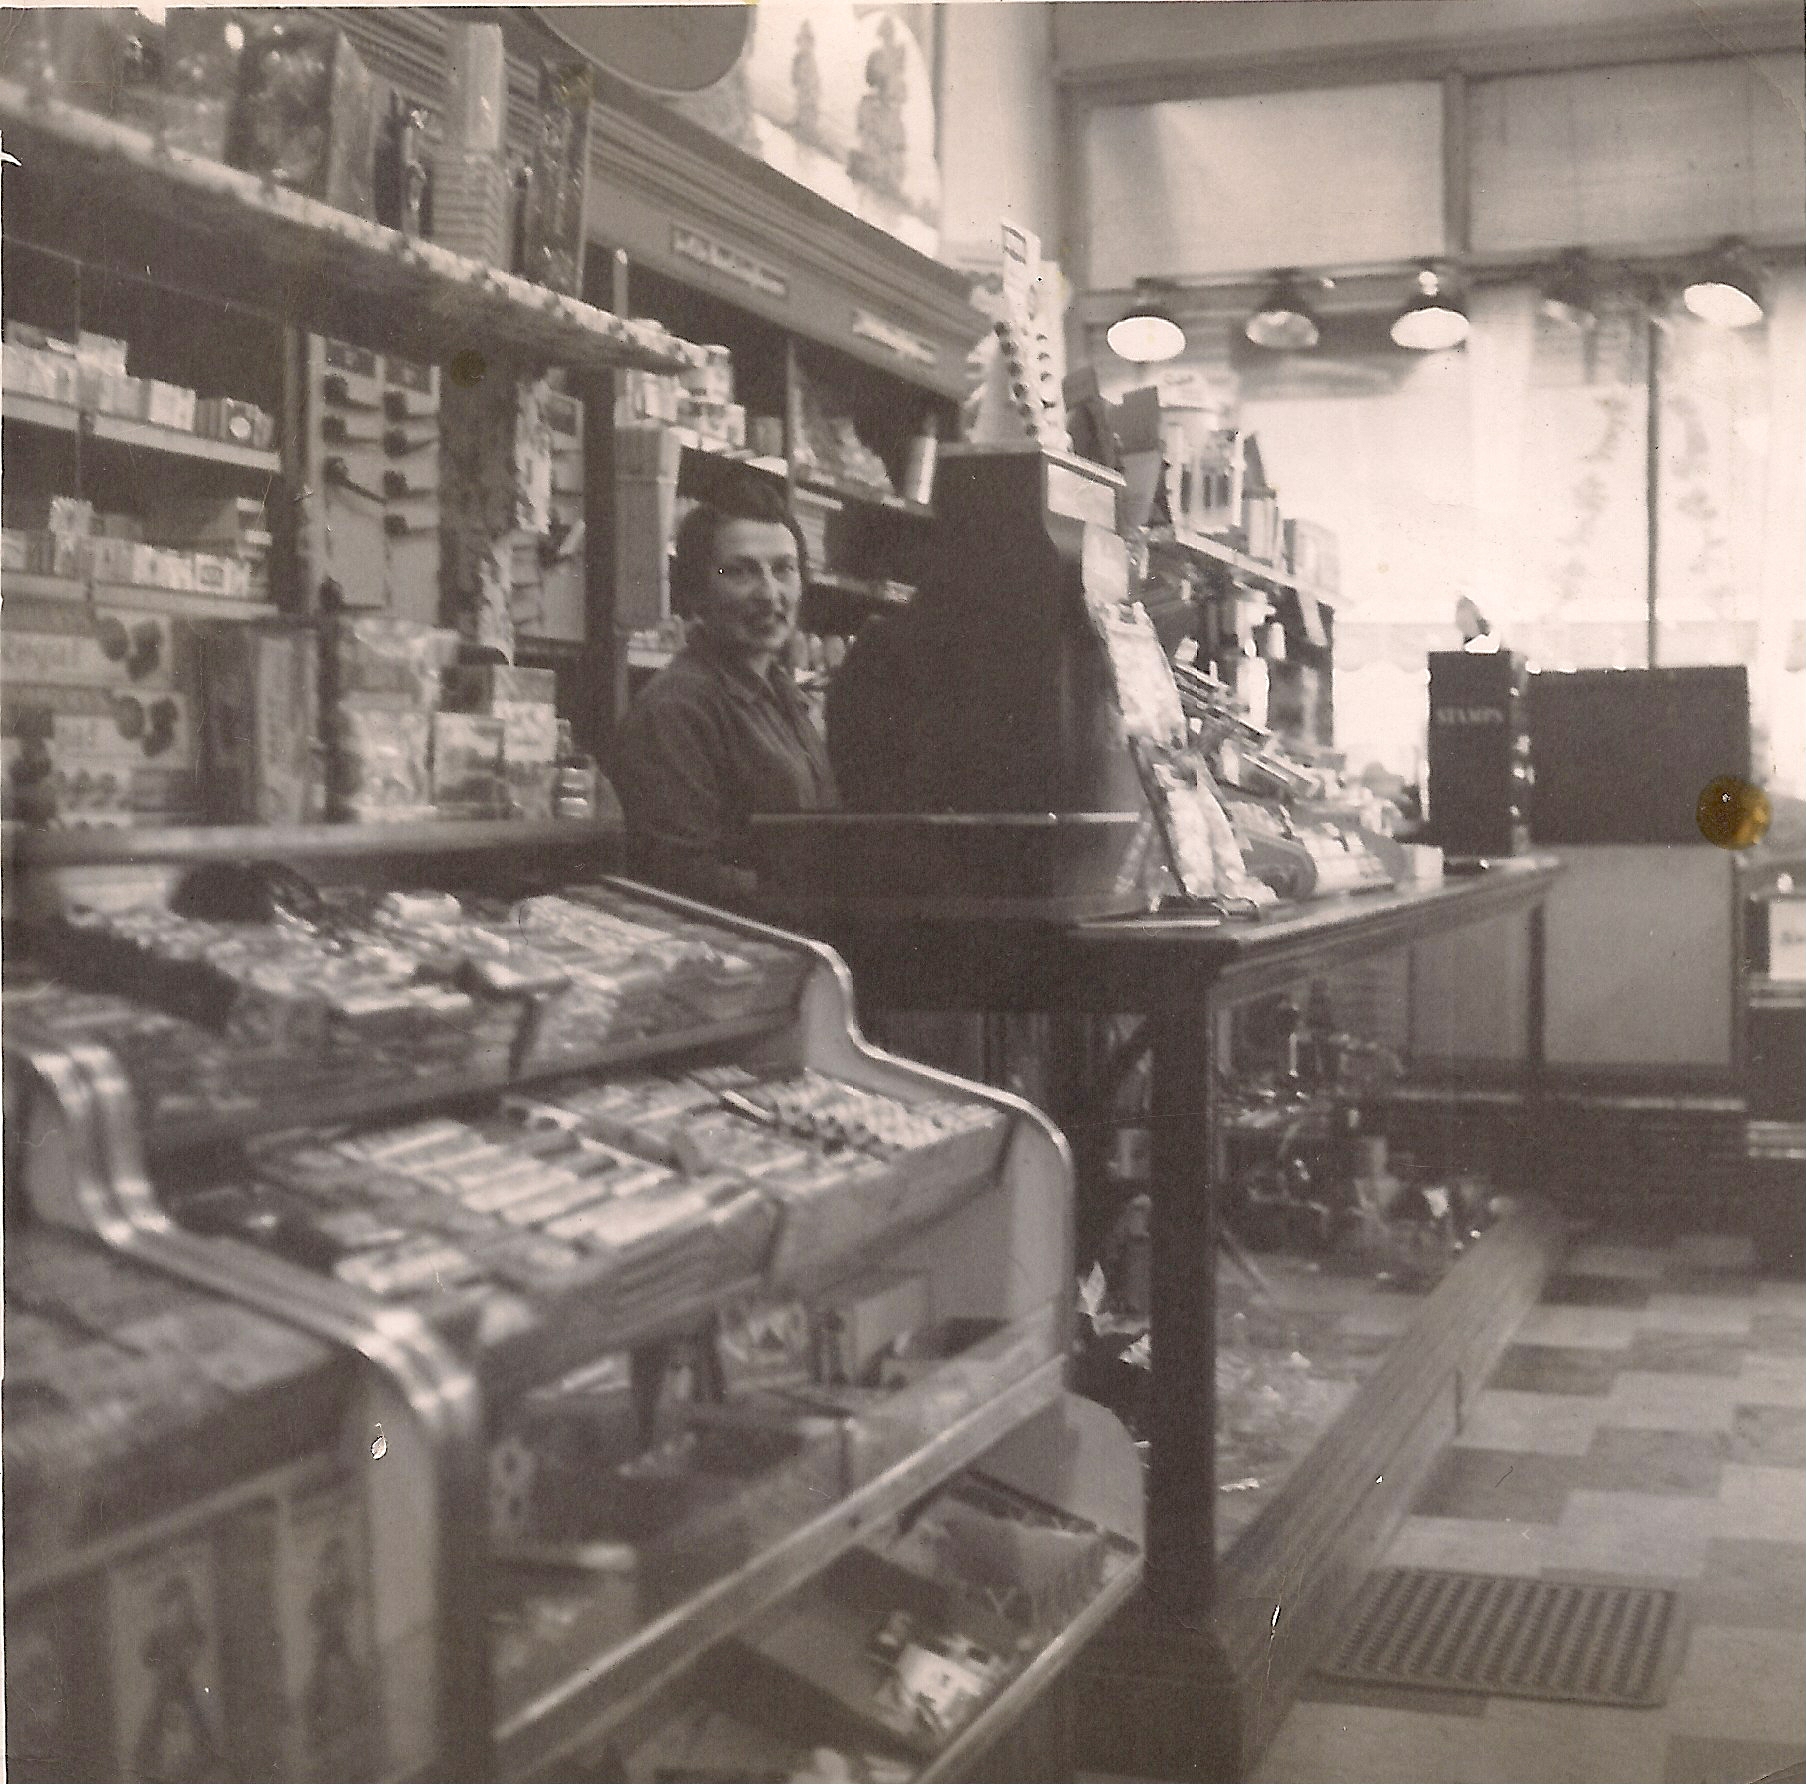 Intérieur de magasin de quartier avec un comptoir rempli de snacks à gauche. Une jeune femme se tient derrière une grande caisse enregistreuse.